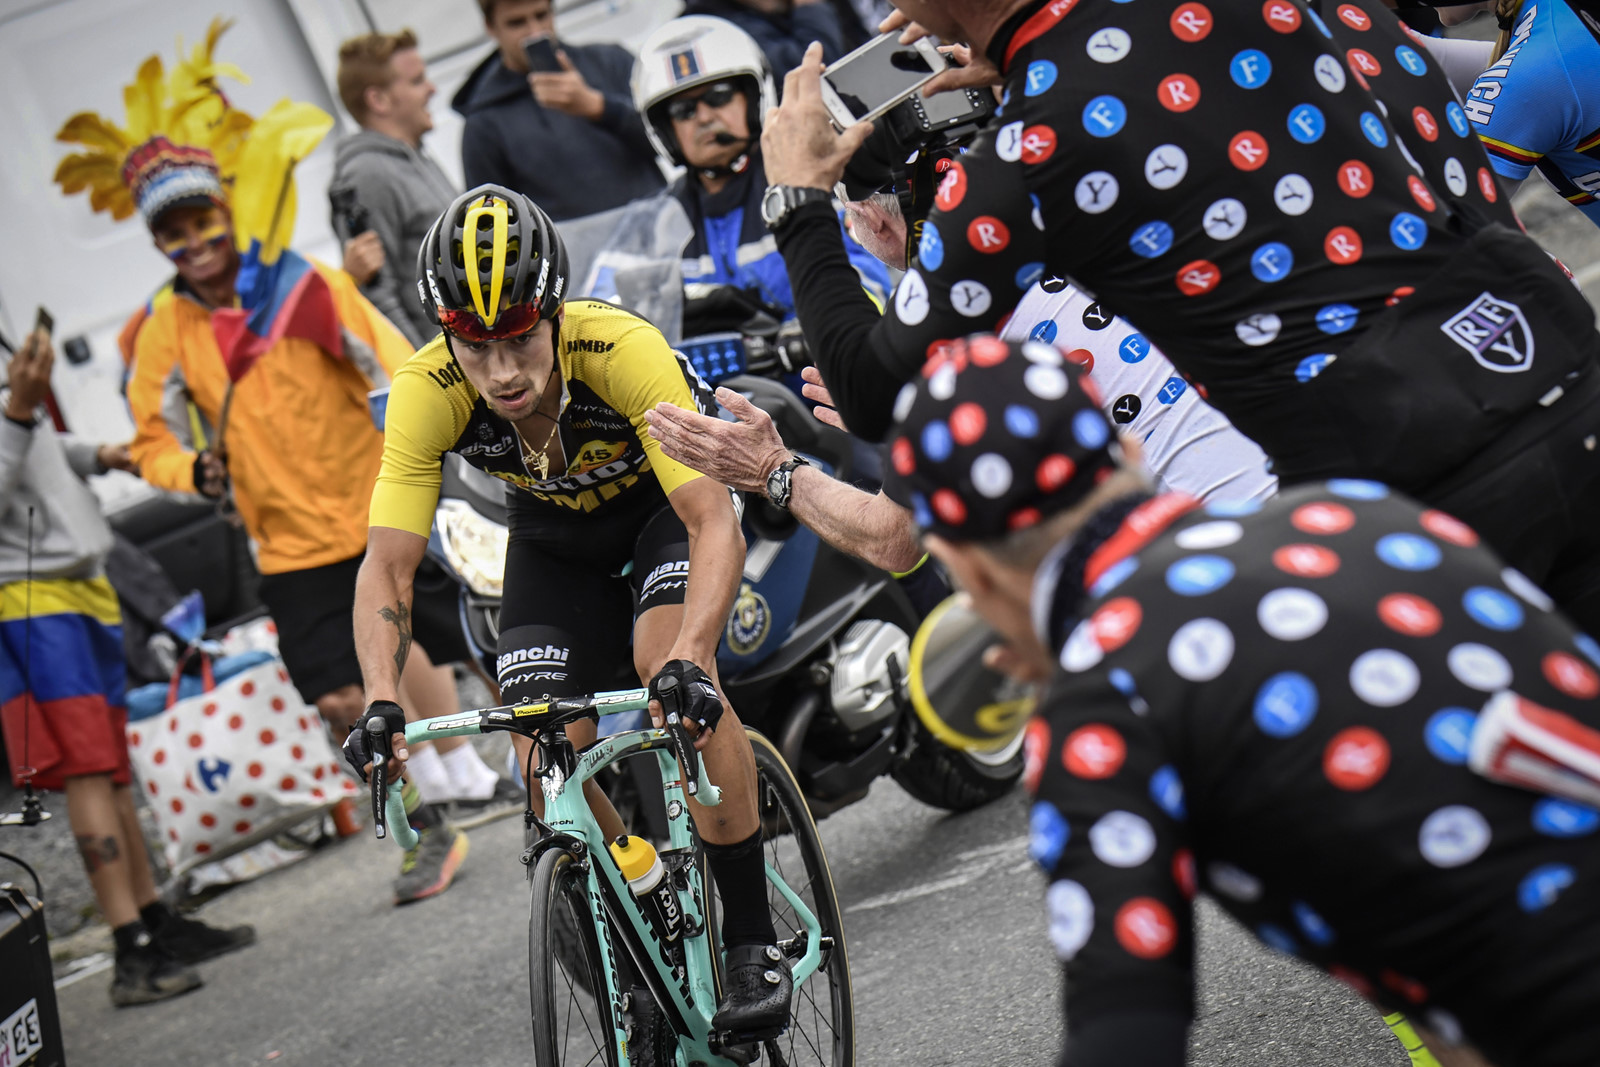 Tháng 7 - 2018: Đến Pháp và xem giải đua xe đạp Tour de France